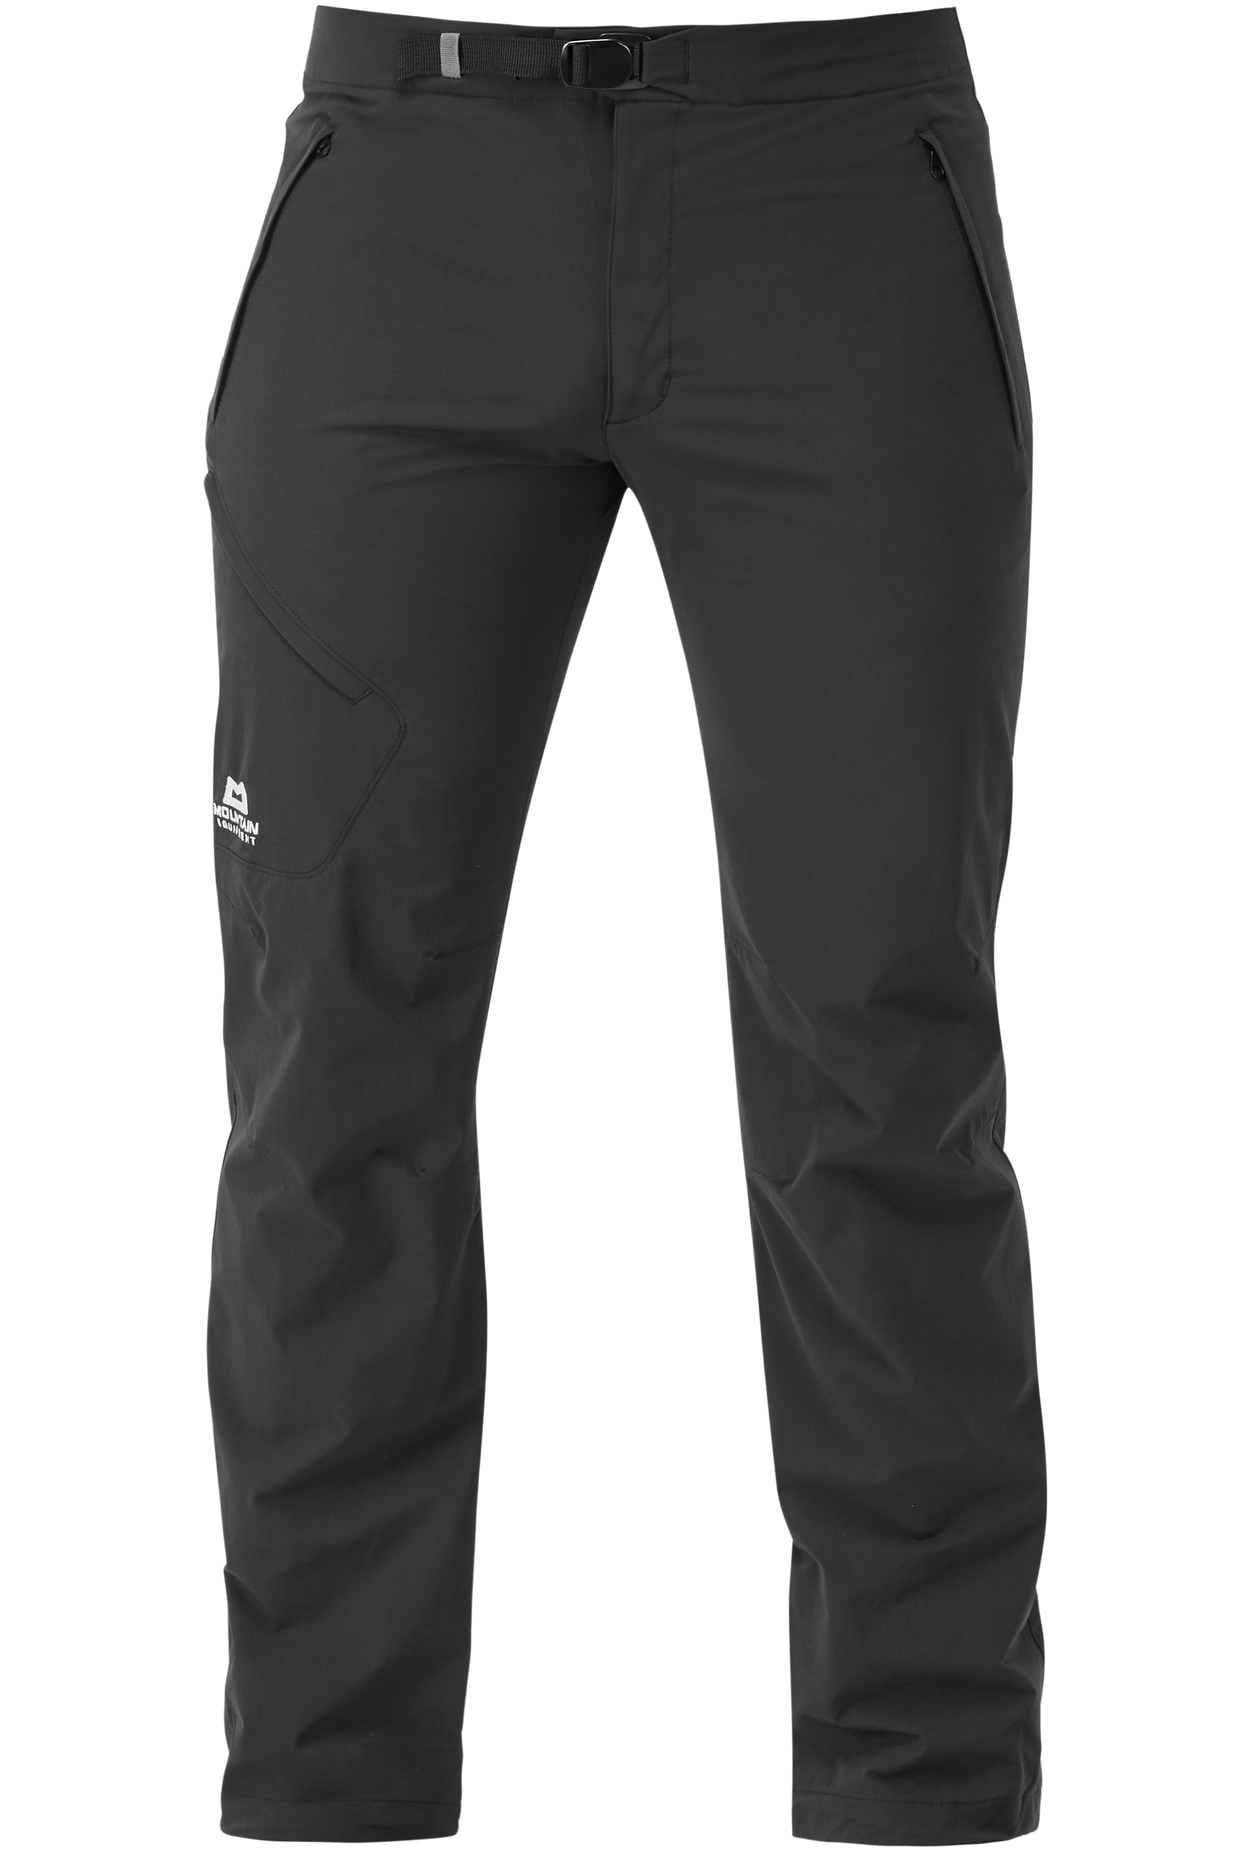 Mountain Equipment pánské softshellové kalhoty Comici Pant - zkrácené Barva: black/black, Velikost: 32/M